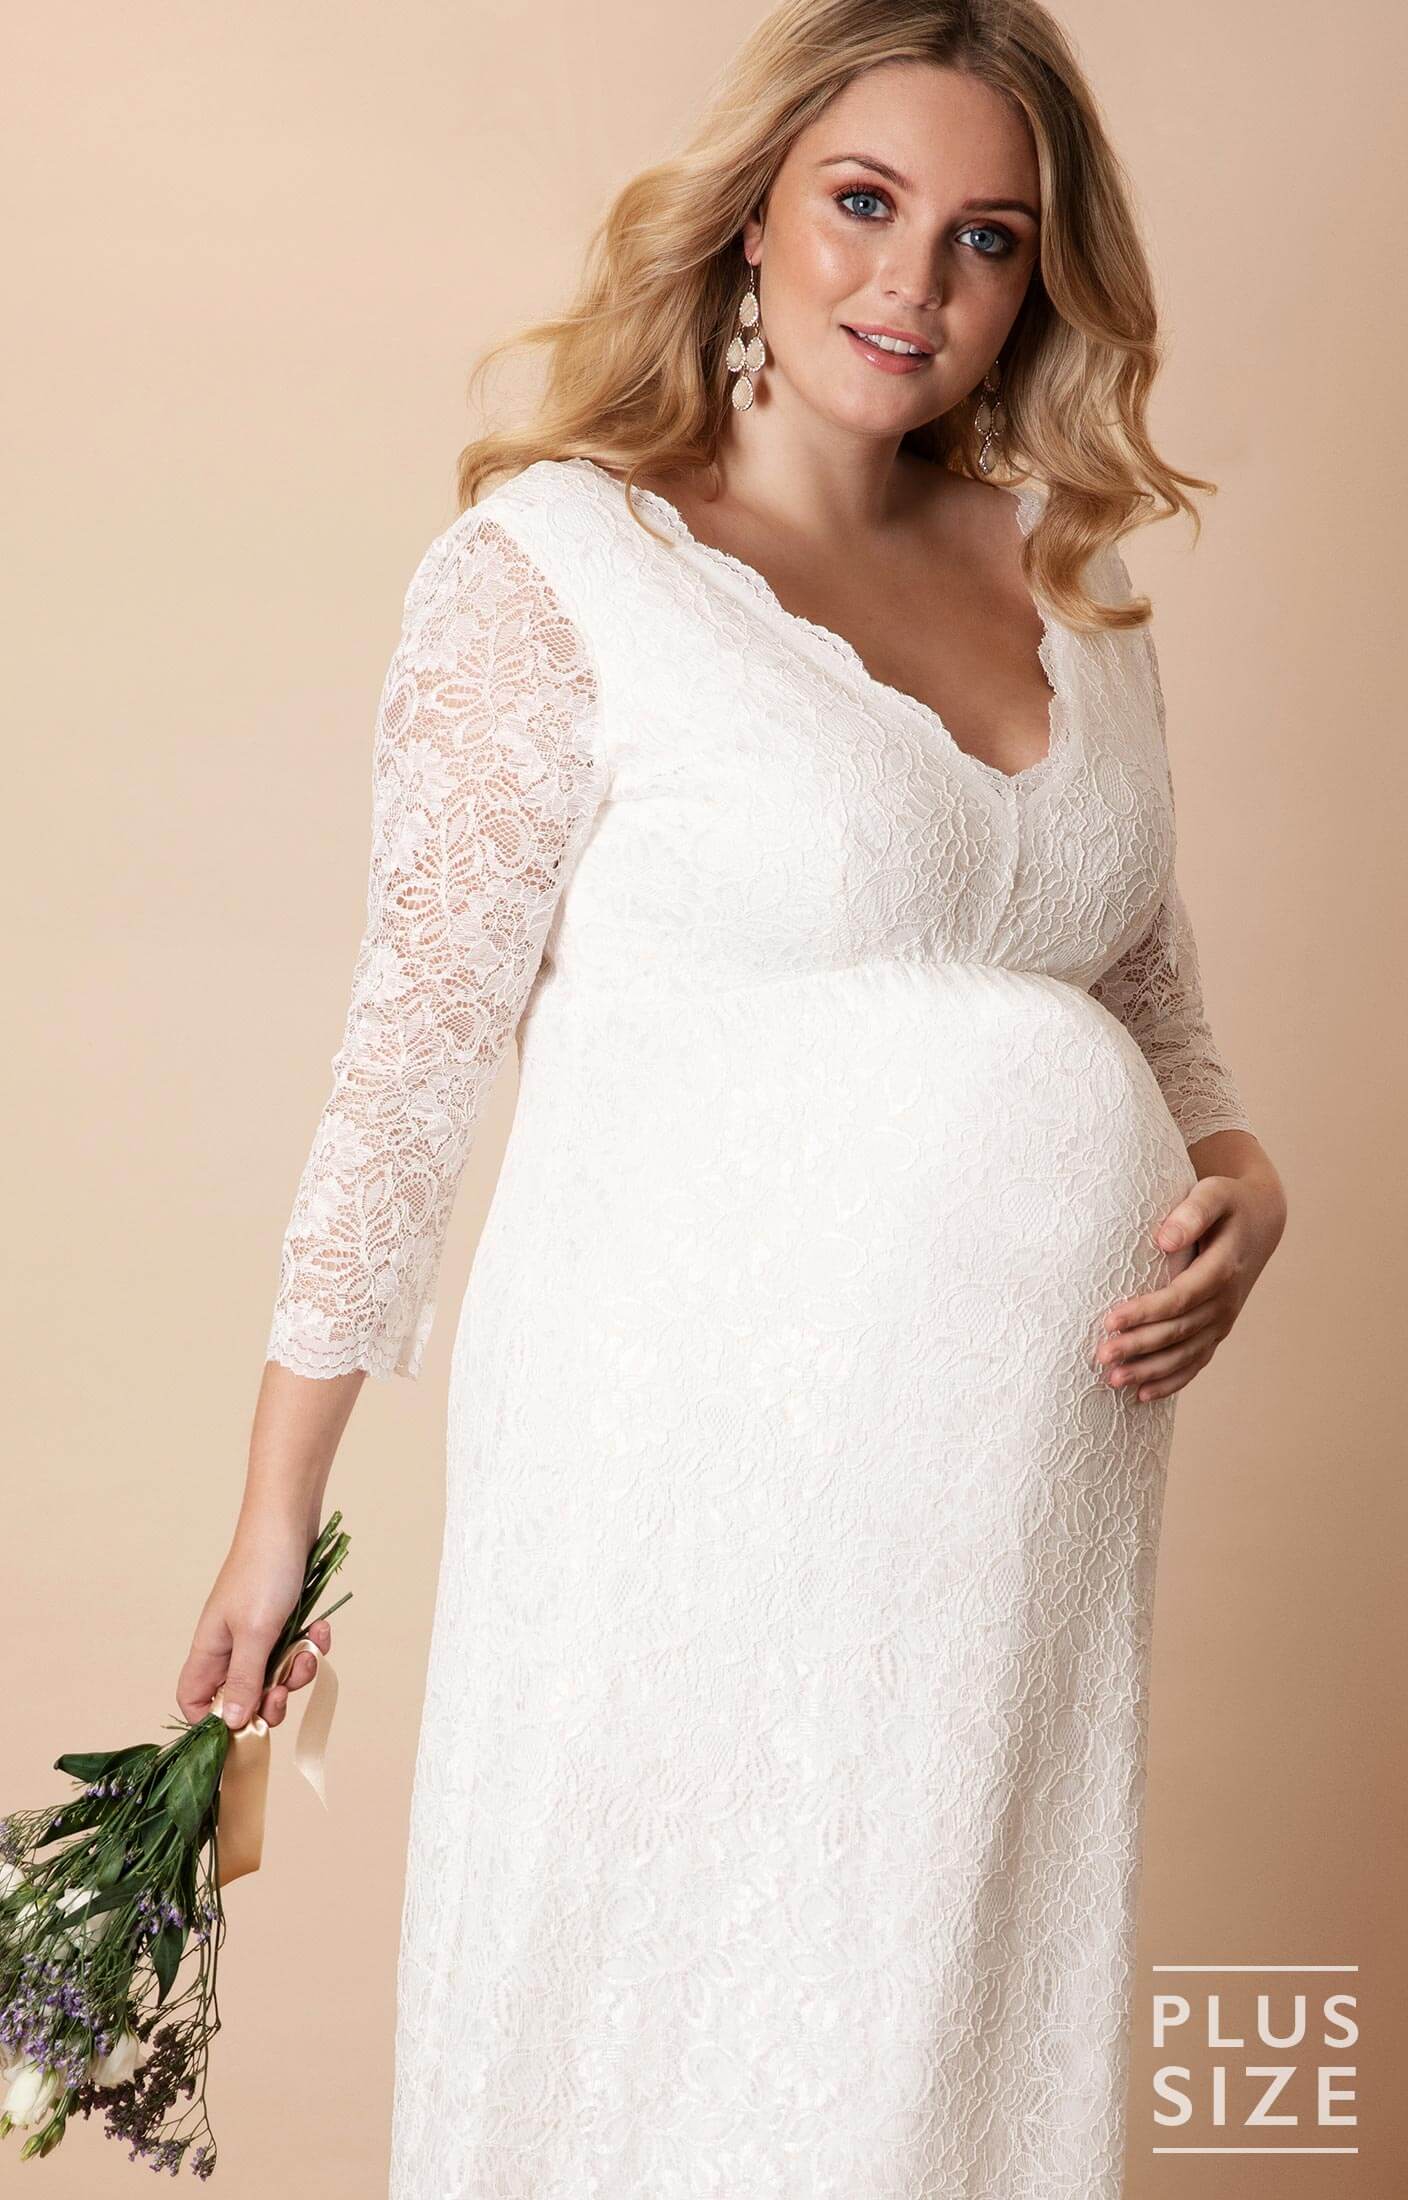 Plus Size Maternity Wedding Dresses Uk - nelsonismissing